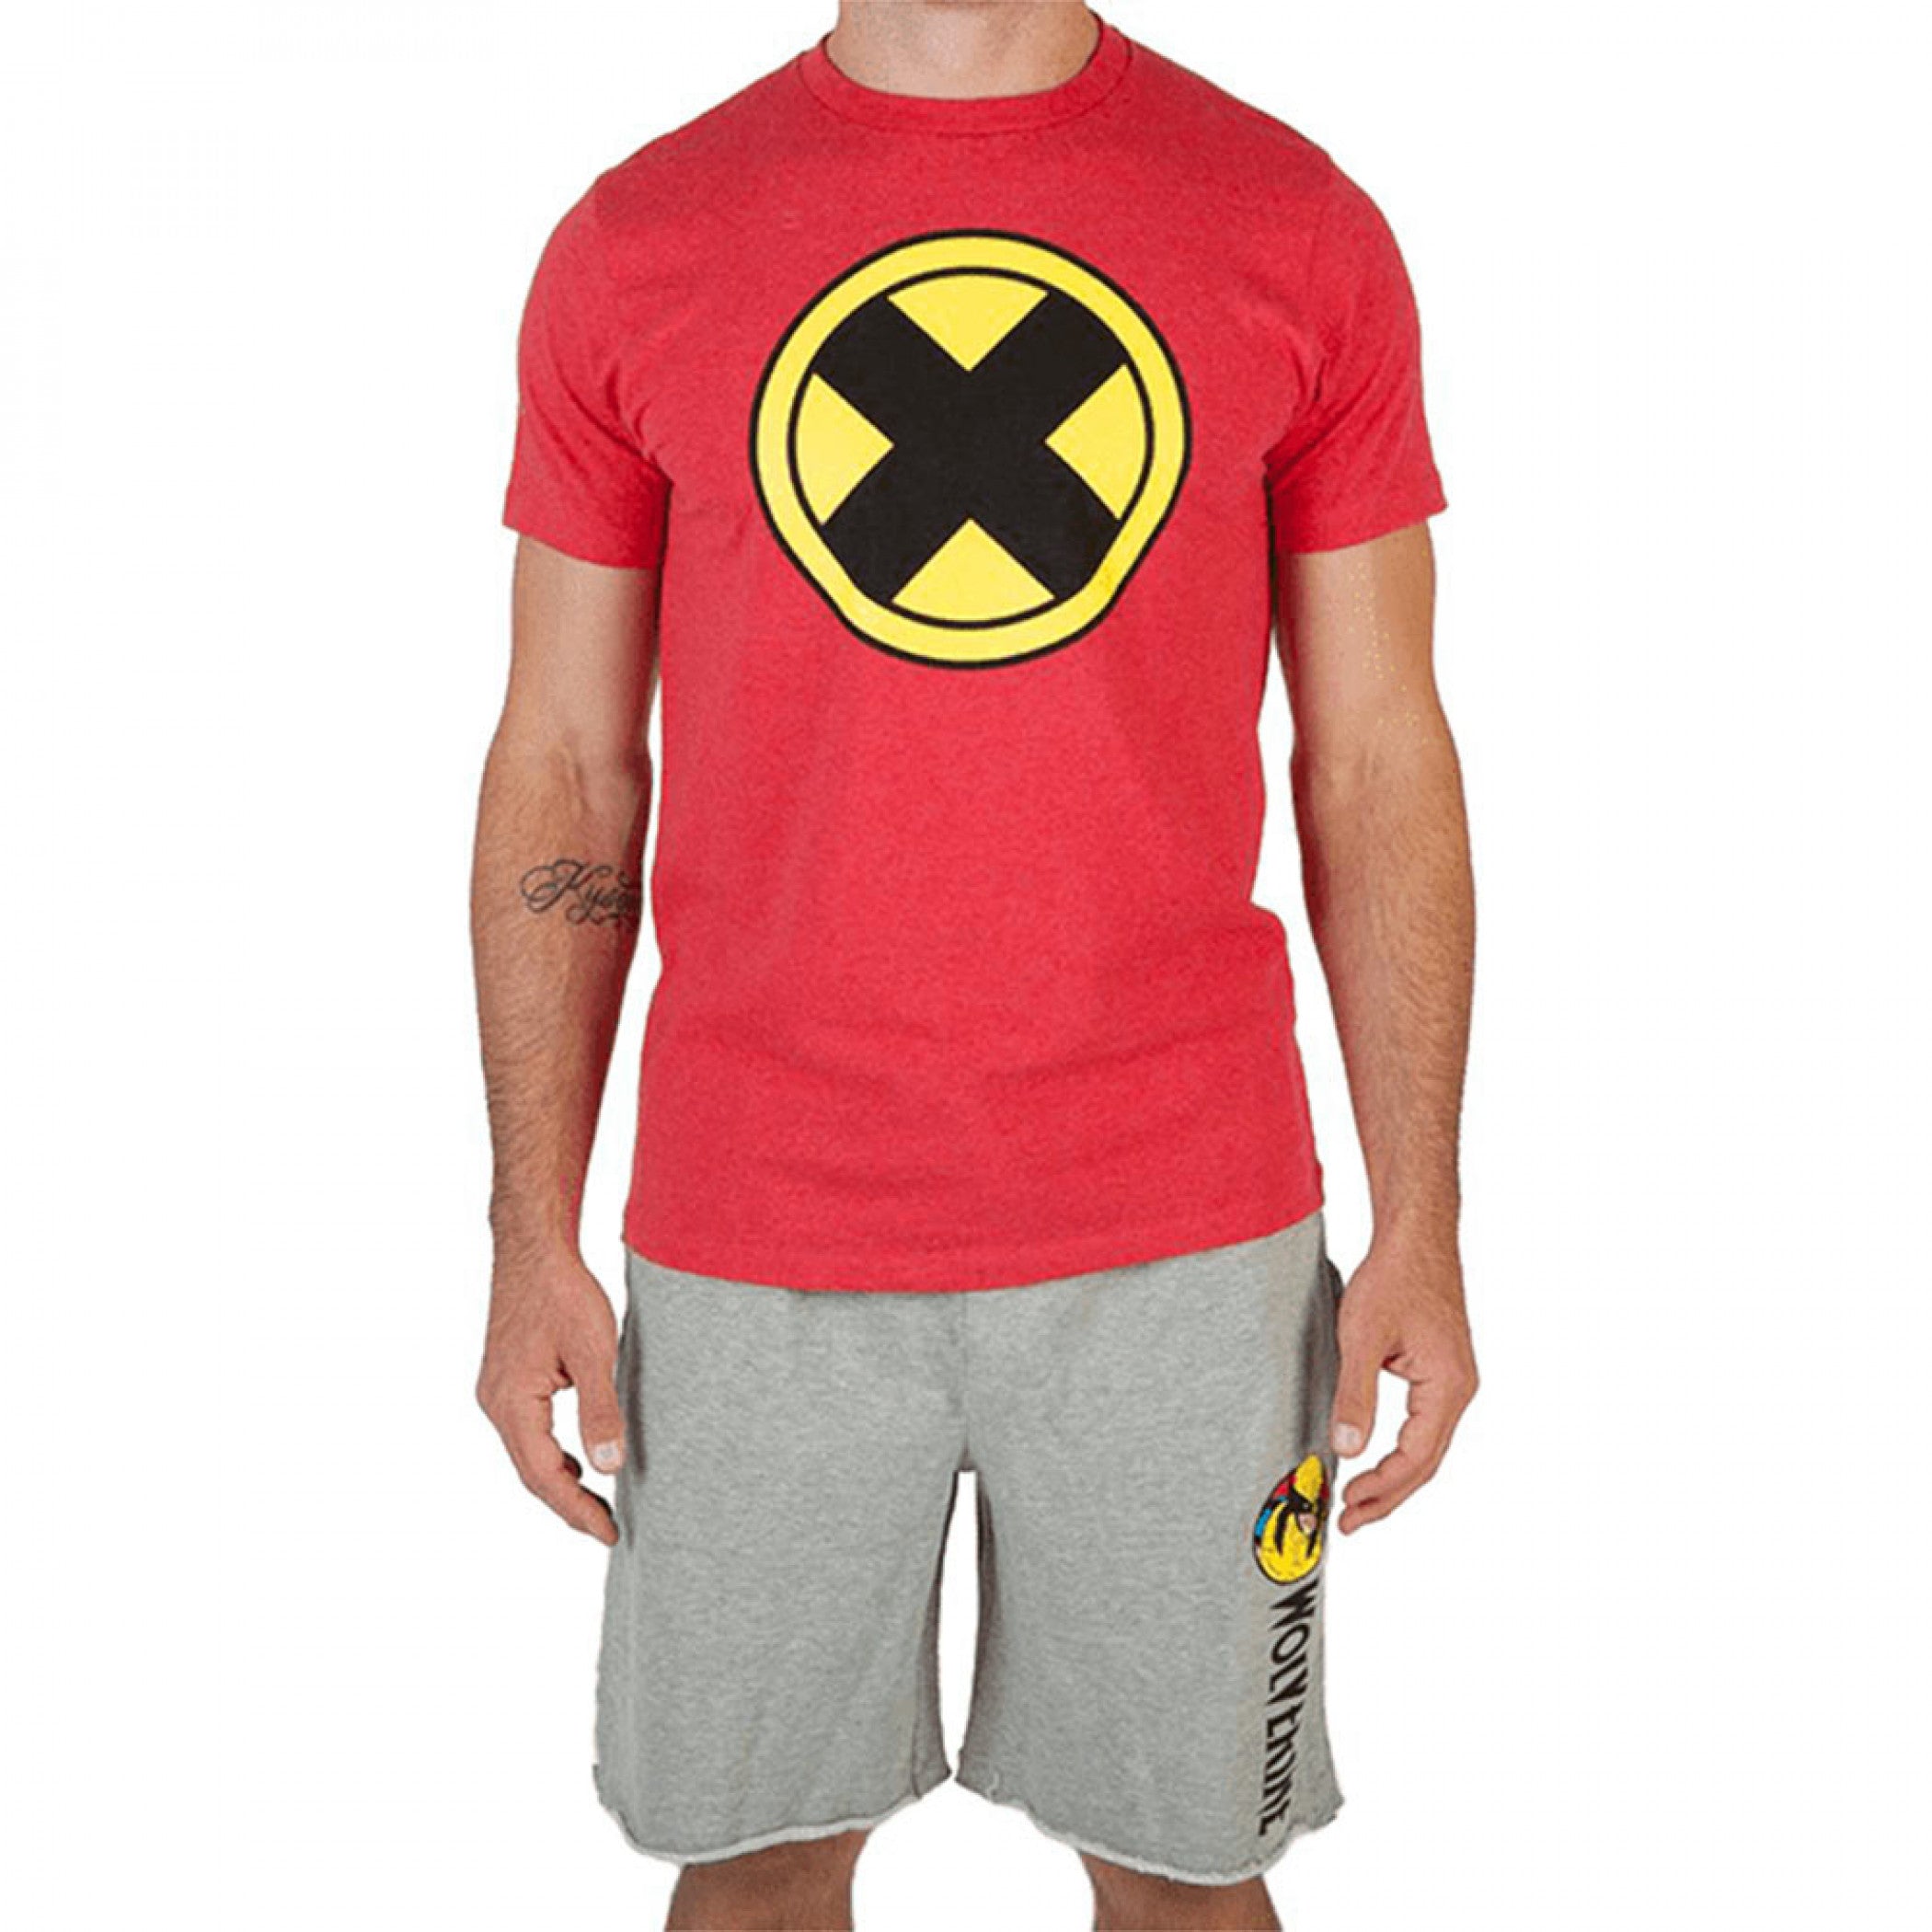 Marvel X-Men Comics T-Shirt and Short Set